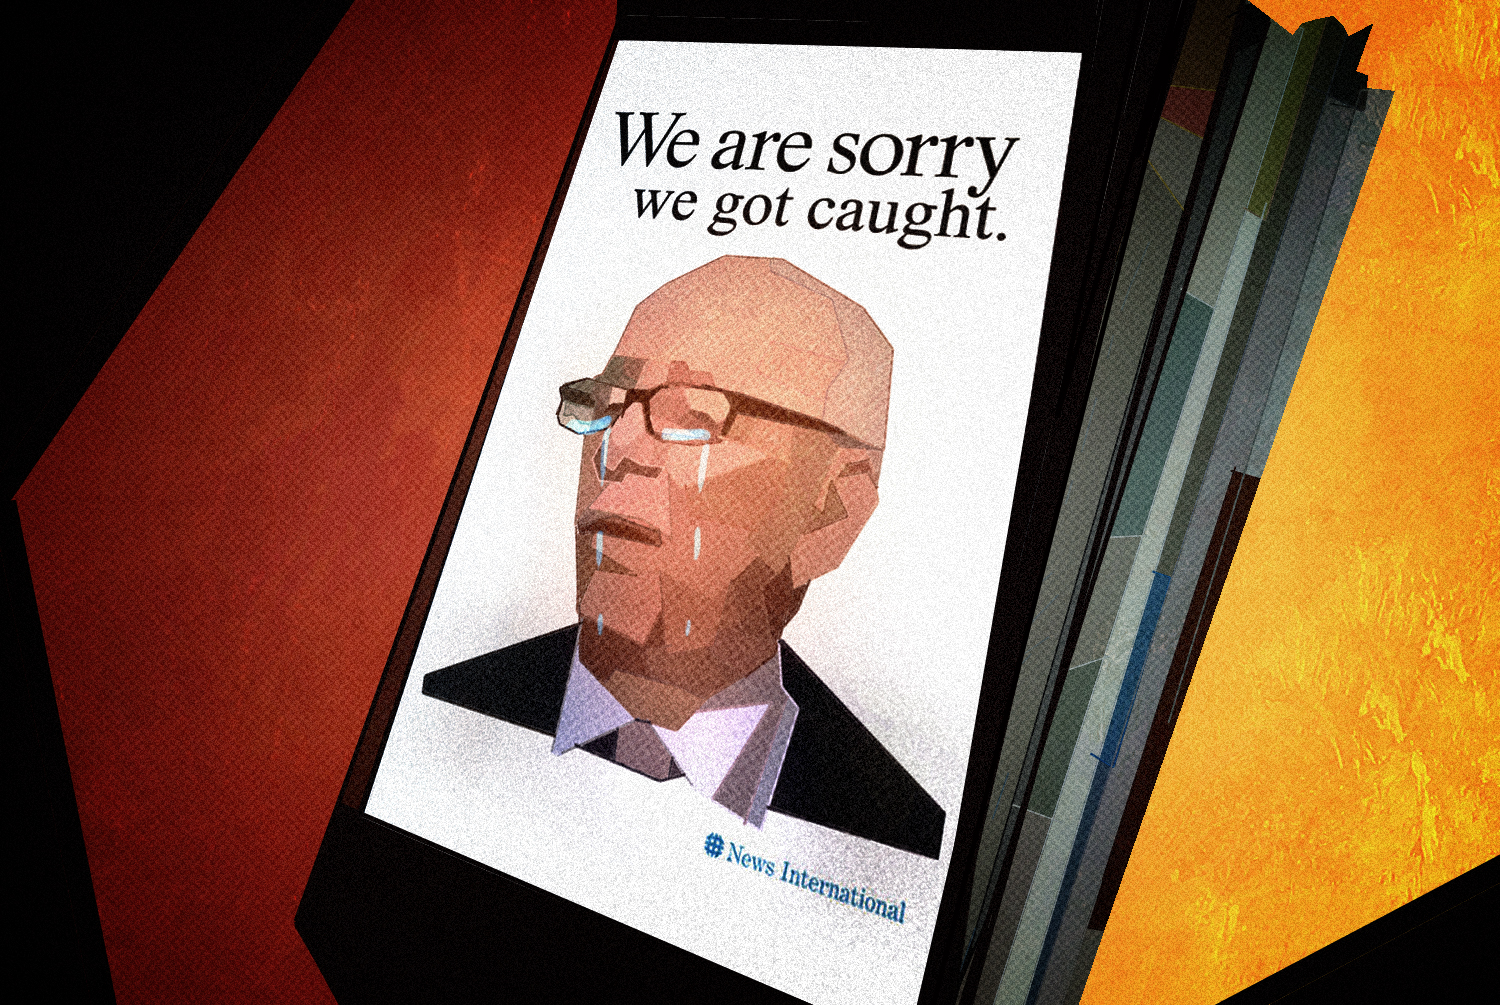 Rupert Murdoch: We Are Sorry We Got Caught